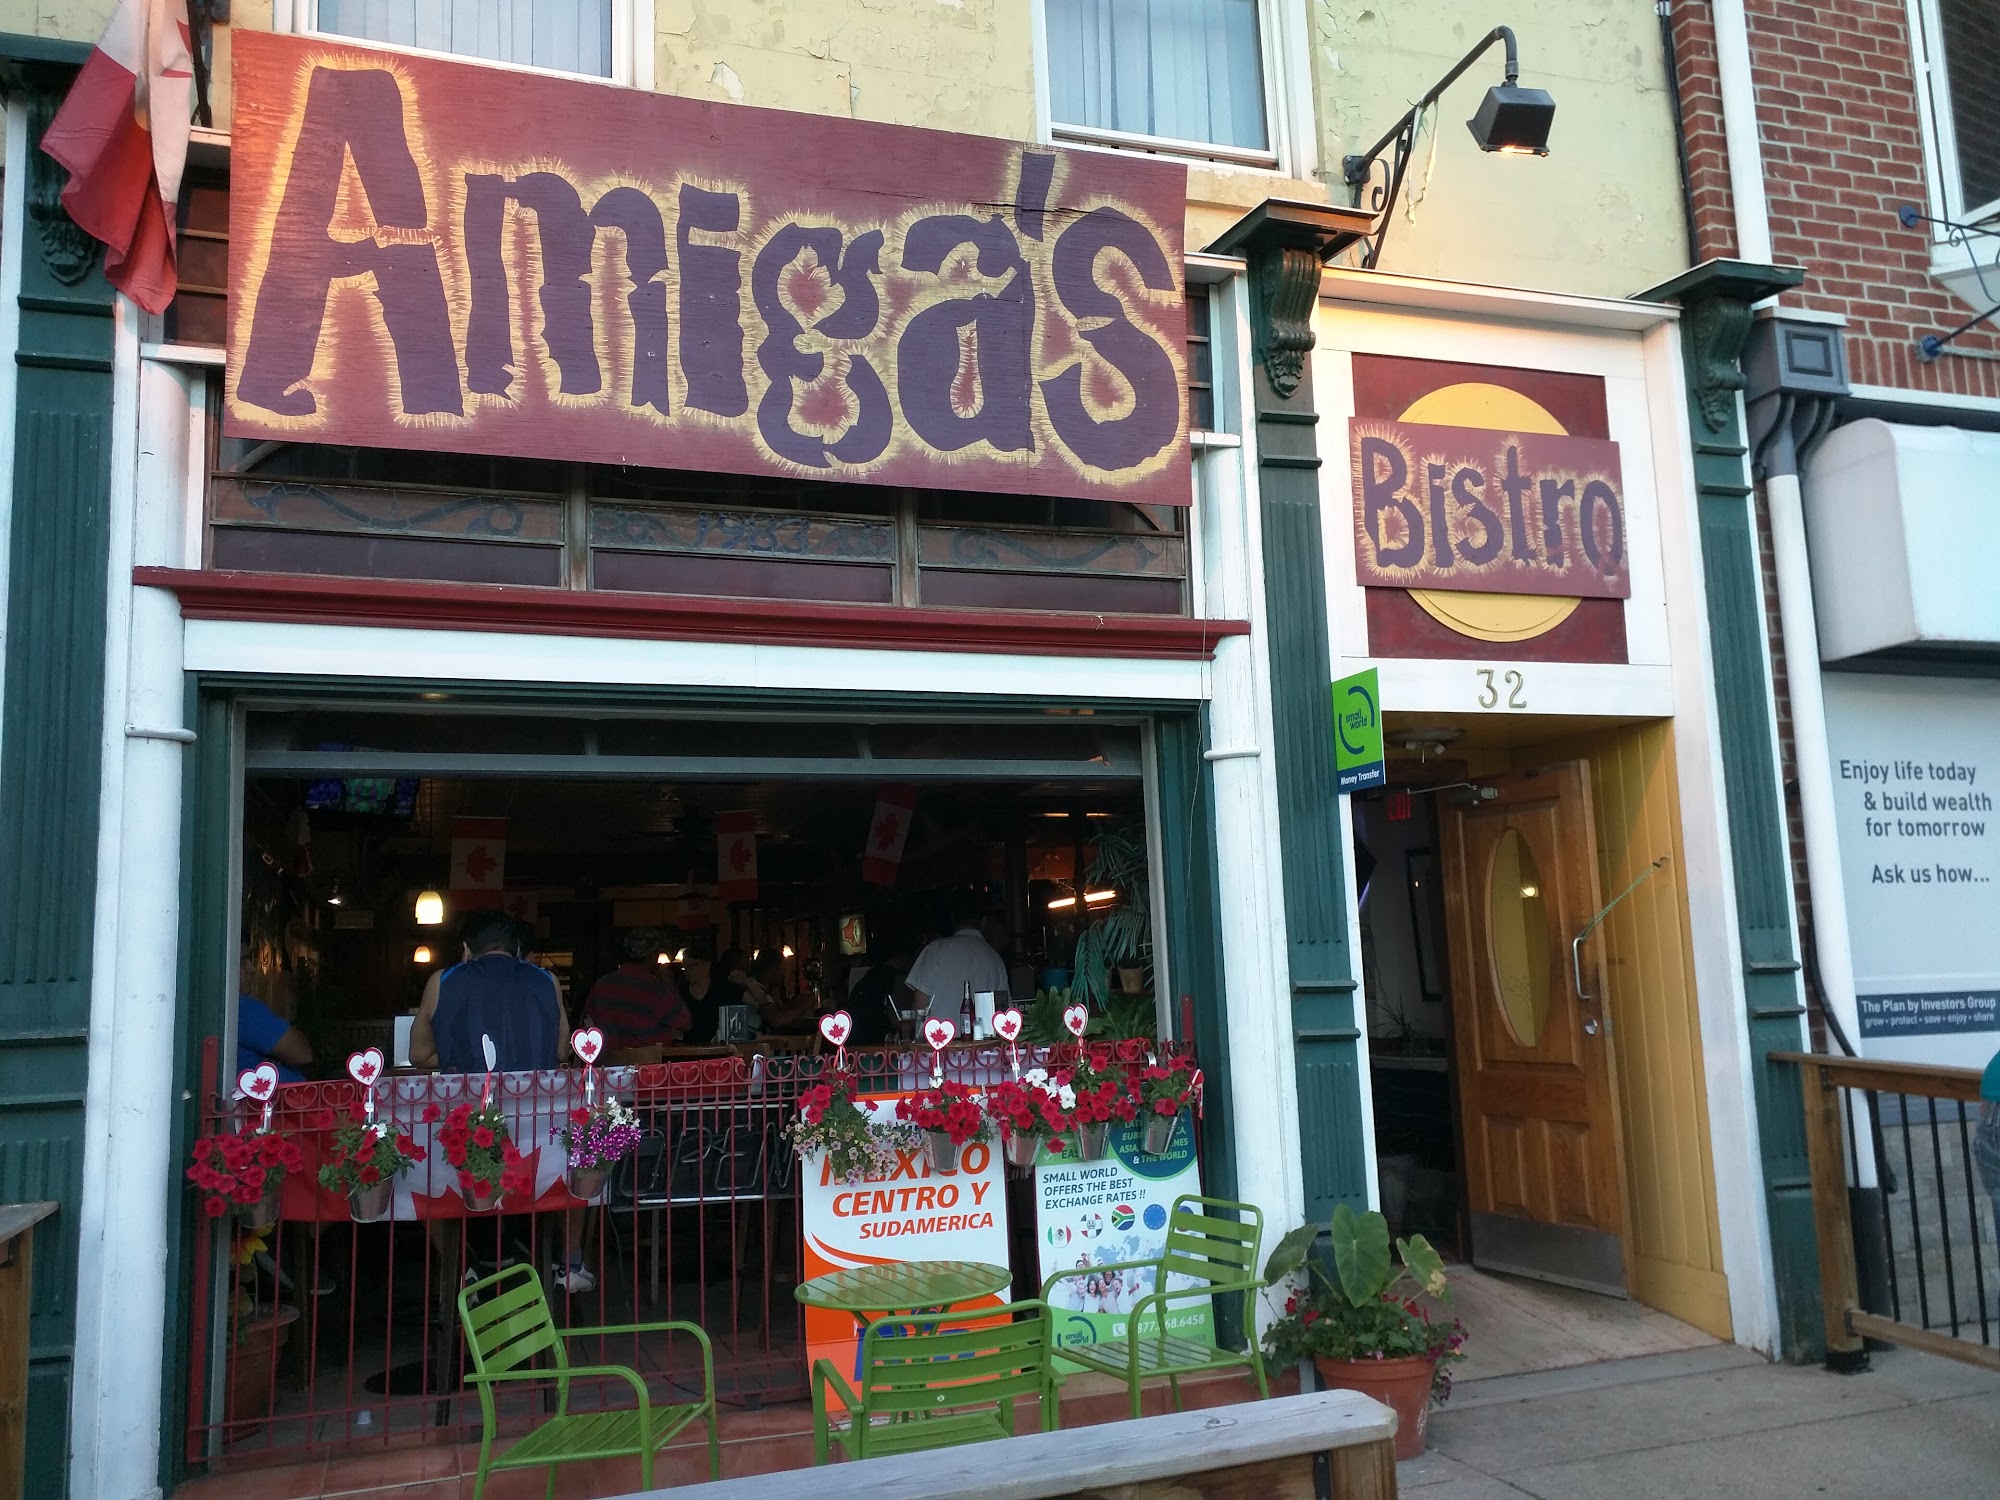 Amiga's Bistro